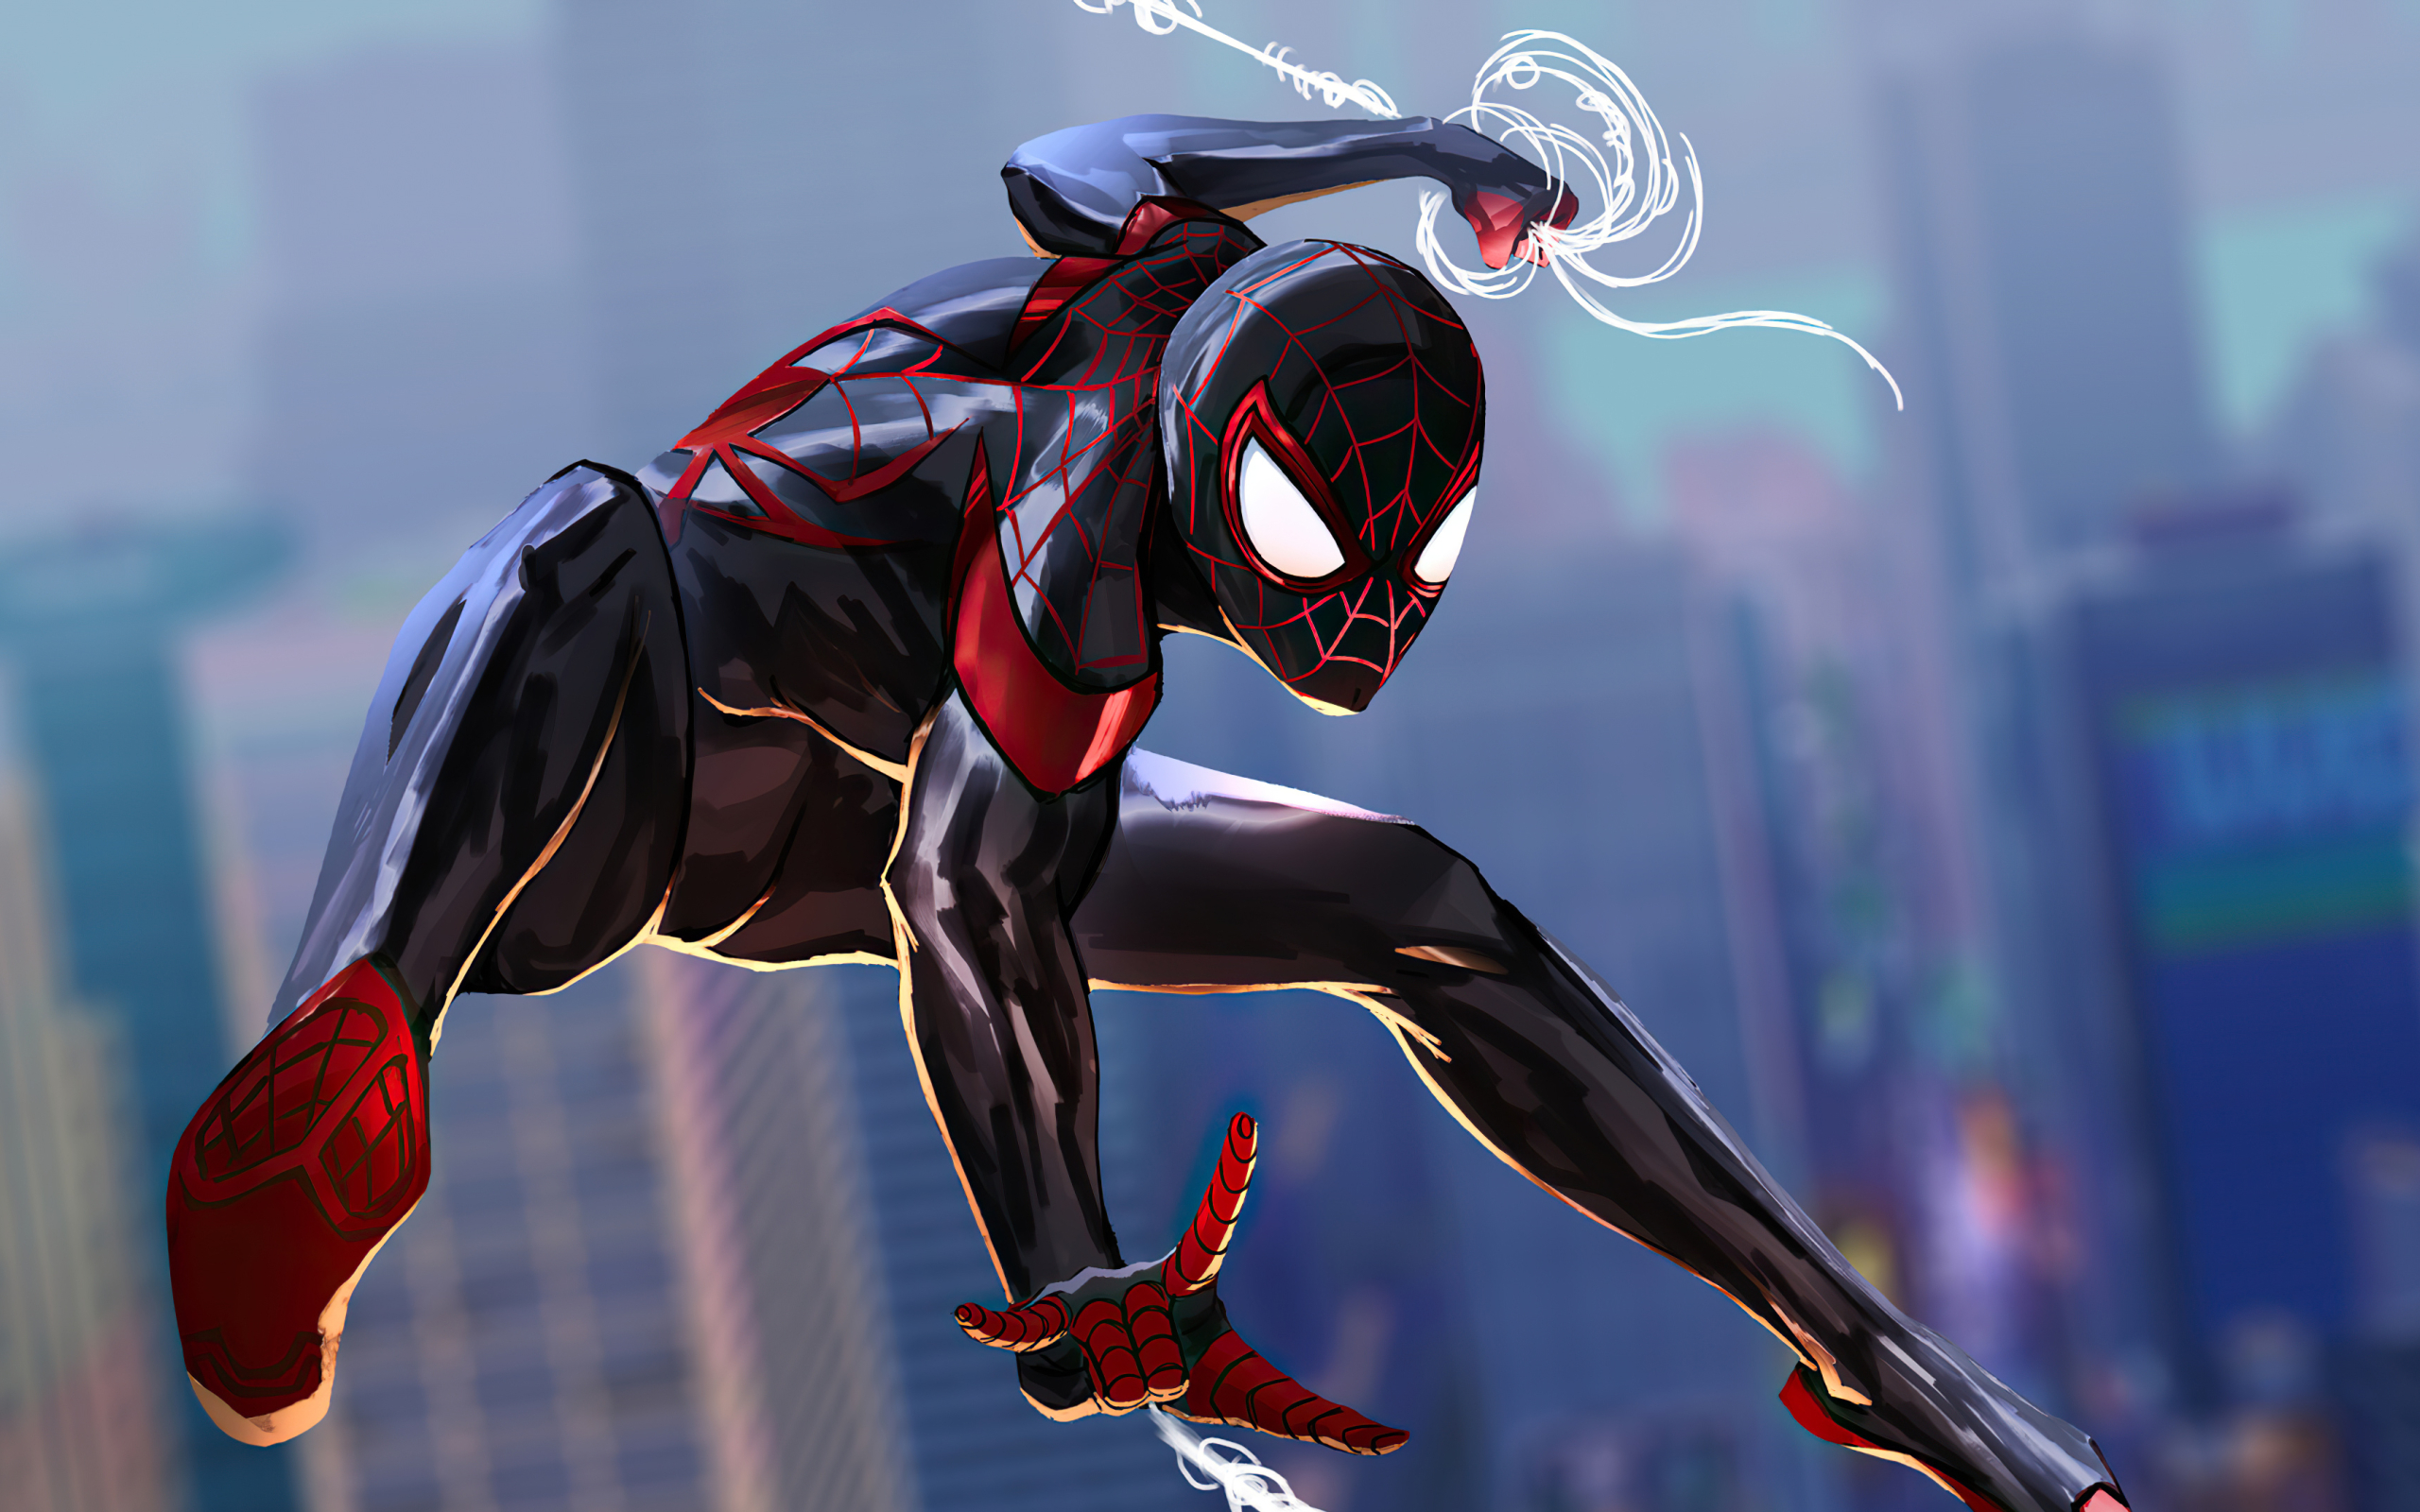 2560x1600 Spider-Man 2 Into The Spider-Verse Art 2560x1600 Resolution ...